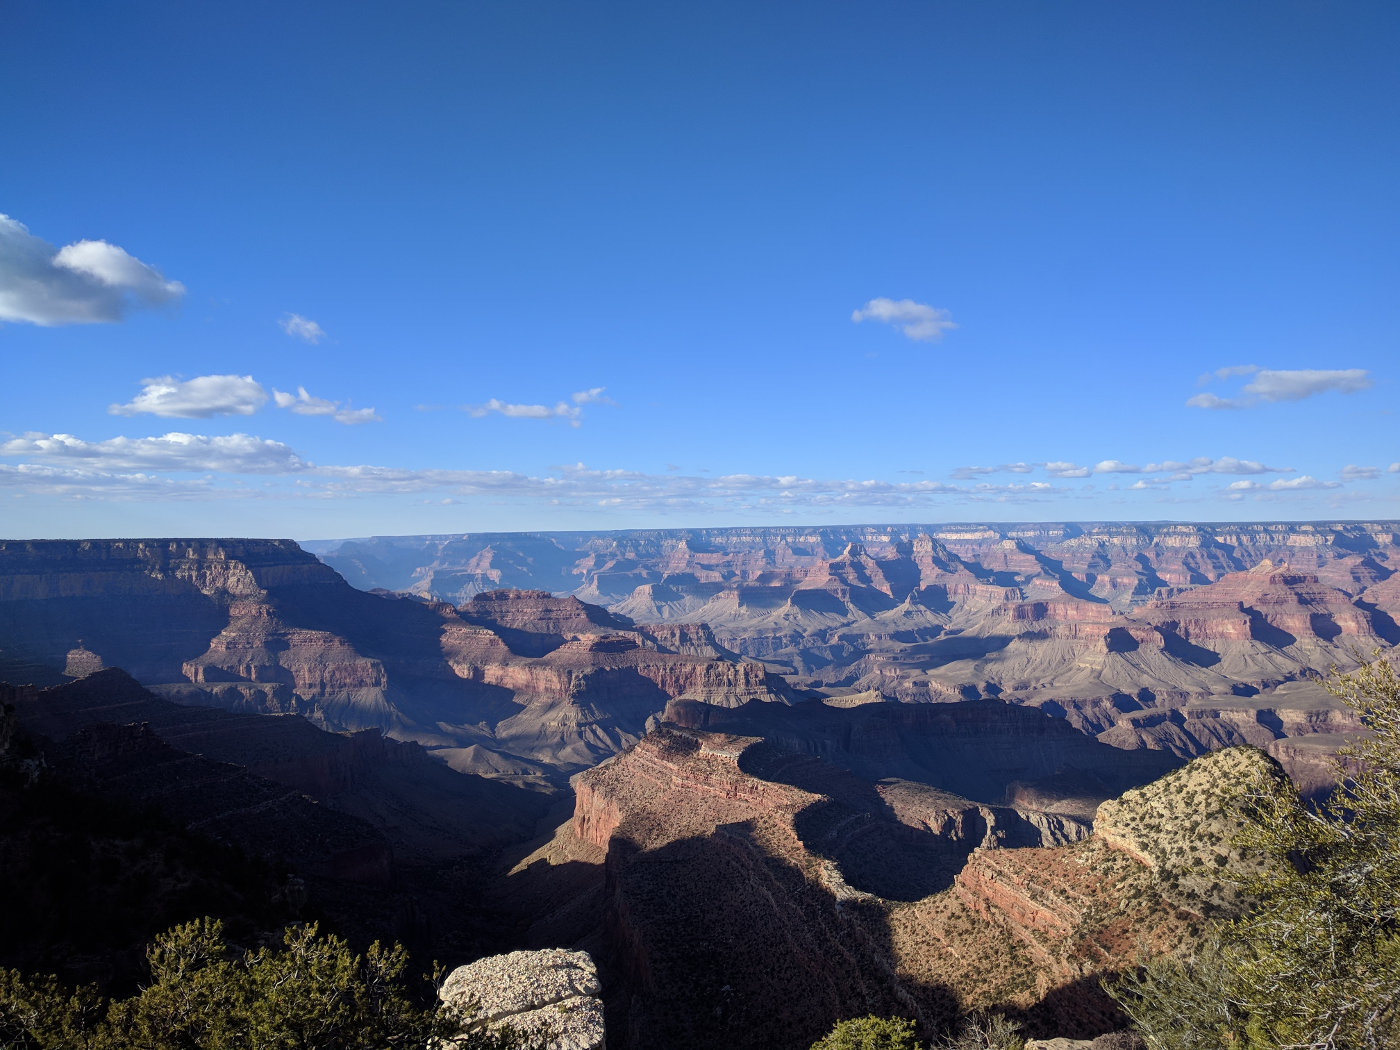 More Grand Canyon